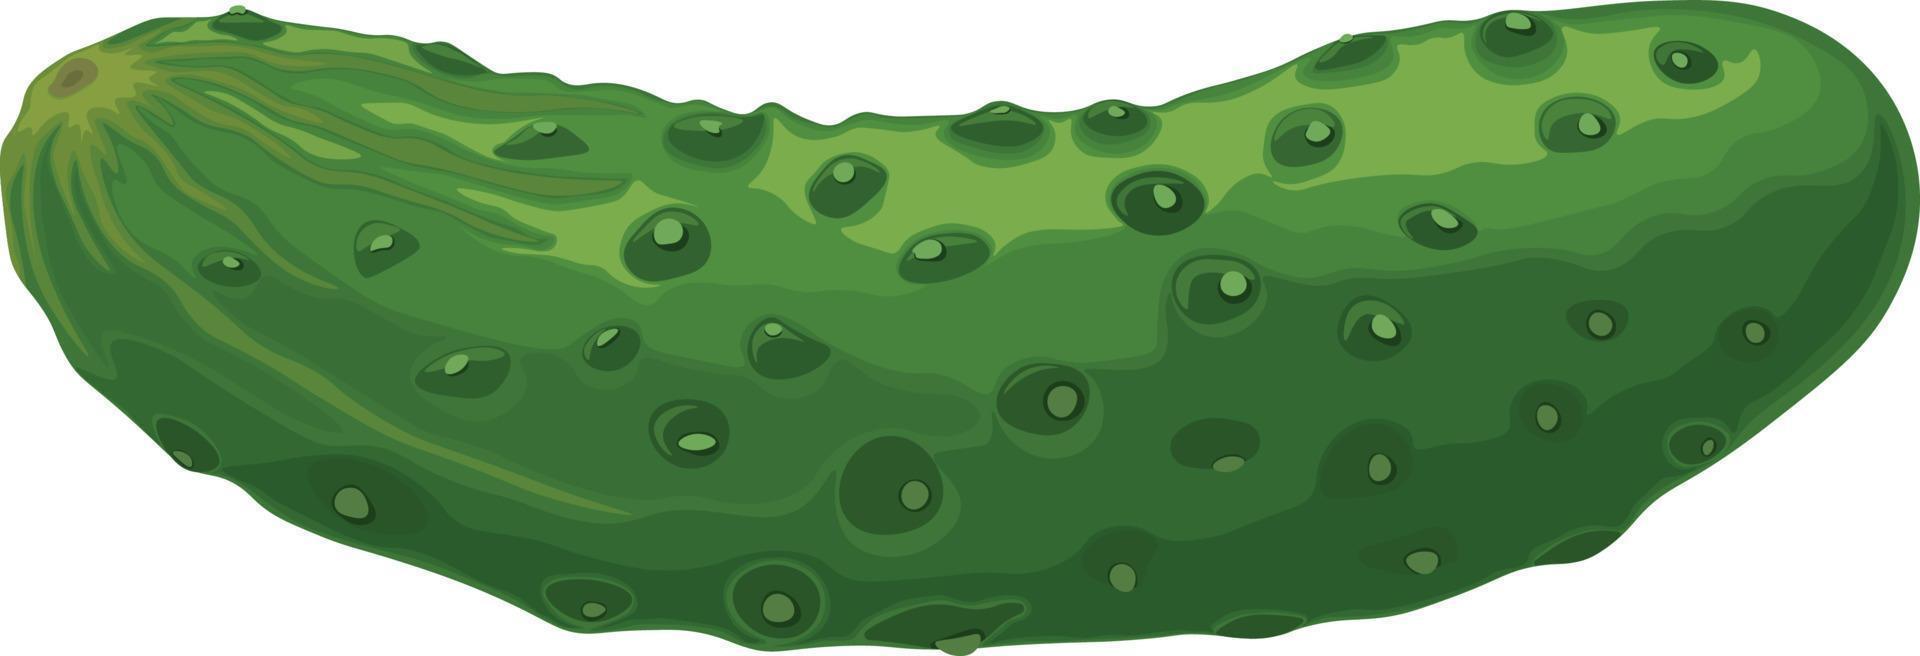 grön gurka. bild av en mogen grön gurka. grön vegetarian produkt. vektor illustration isolerat på en vit bakgrund